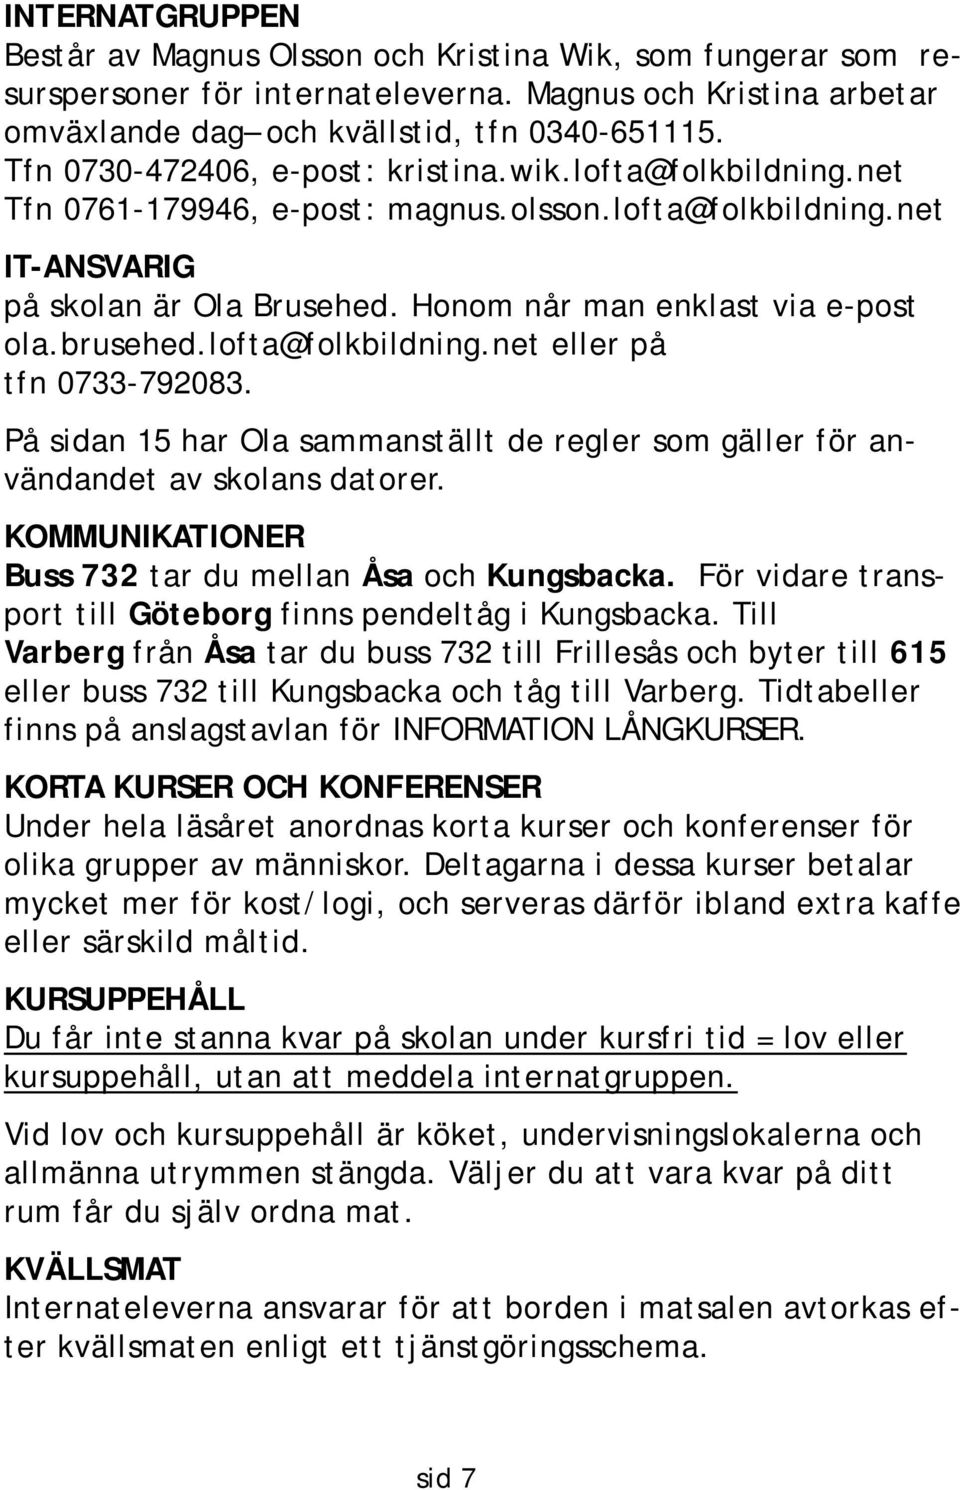 brusehed.lofta@folkbildning.net eller på tfn 0733-792083. På sidan 15 har Ola sammanställt de regler som gäller för användandet av skolans datorer.